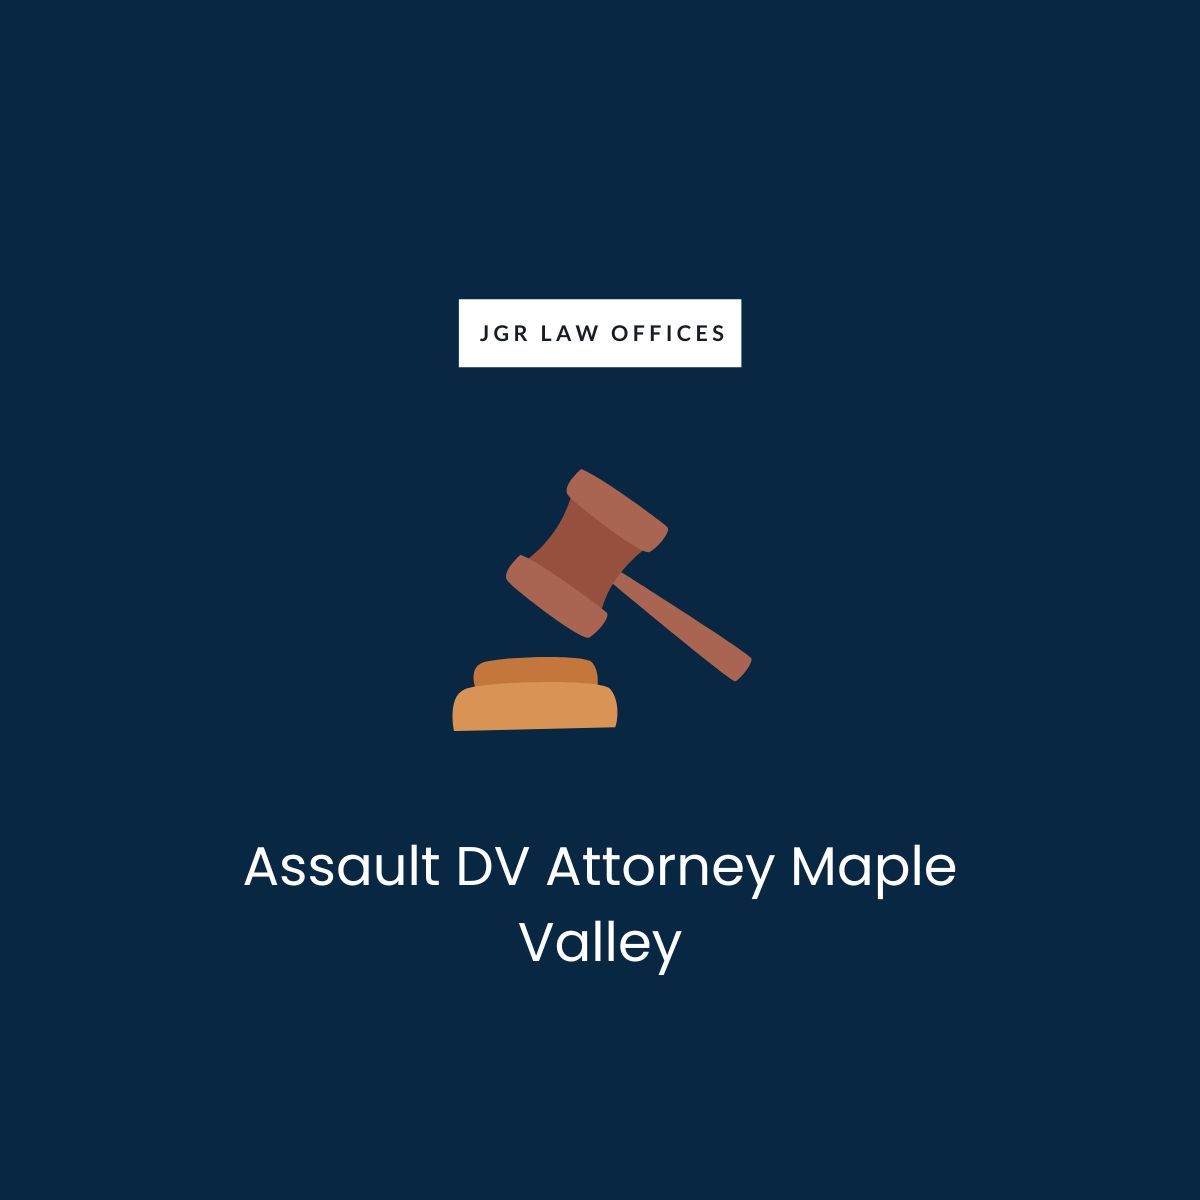 Assault DV Lawyer Maple Valley Assault DV Assault DV